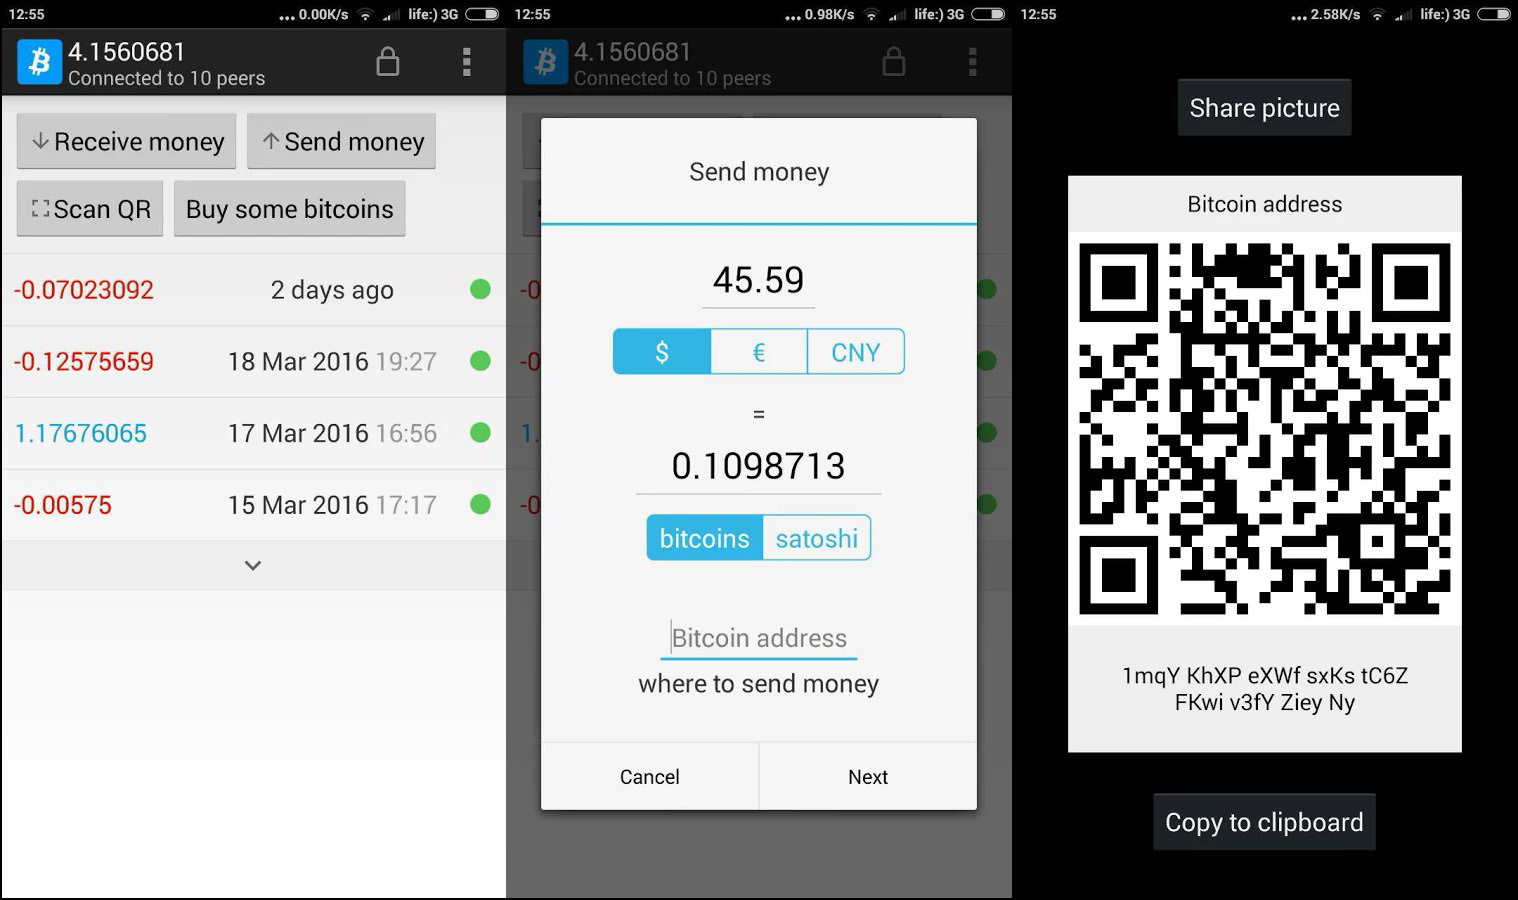 buy bitcoin wallet management code online